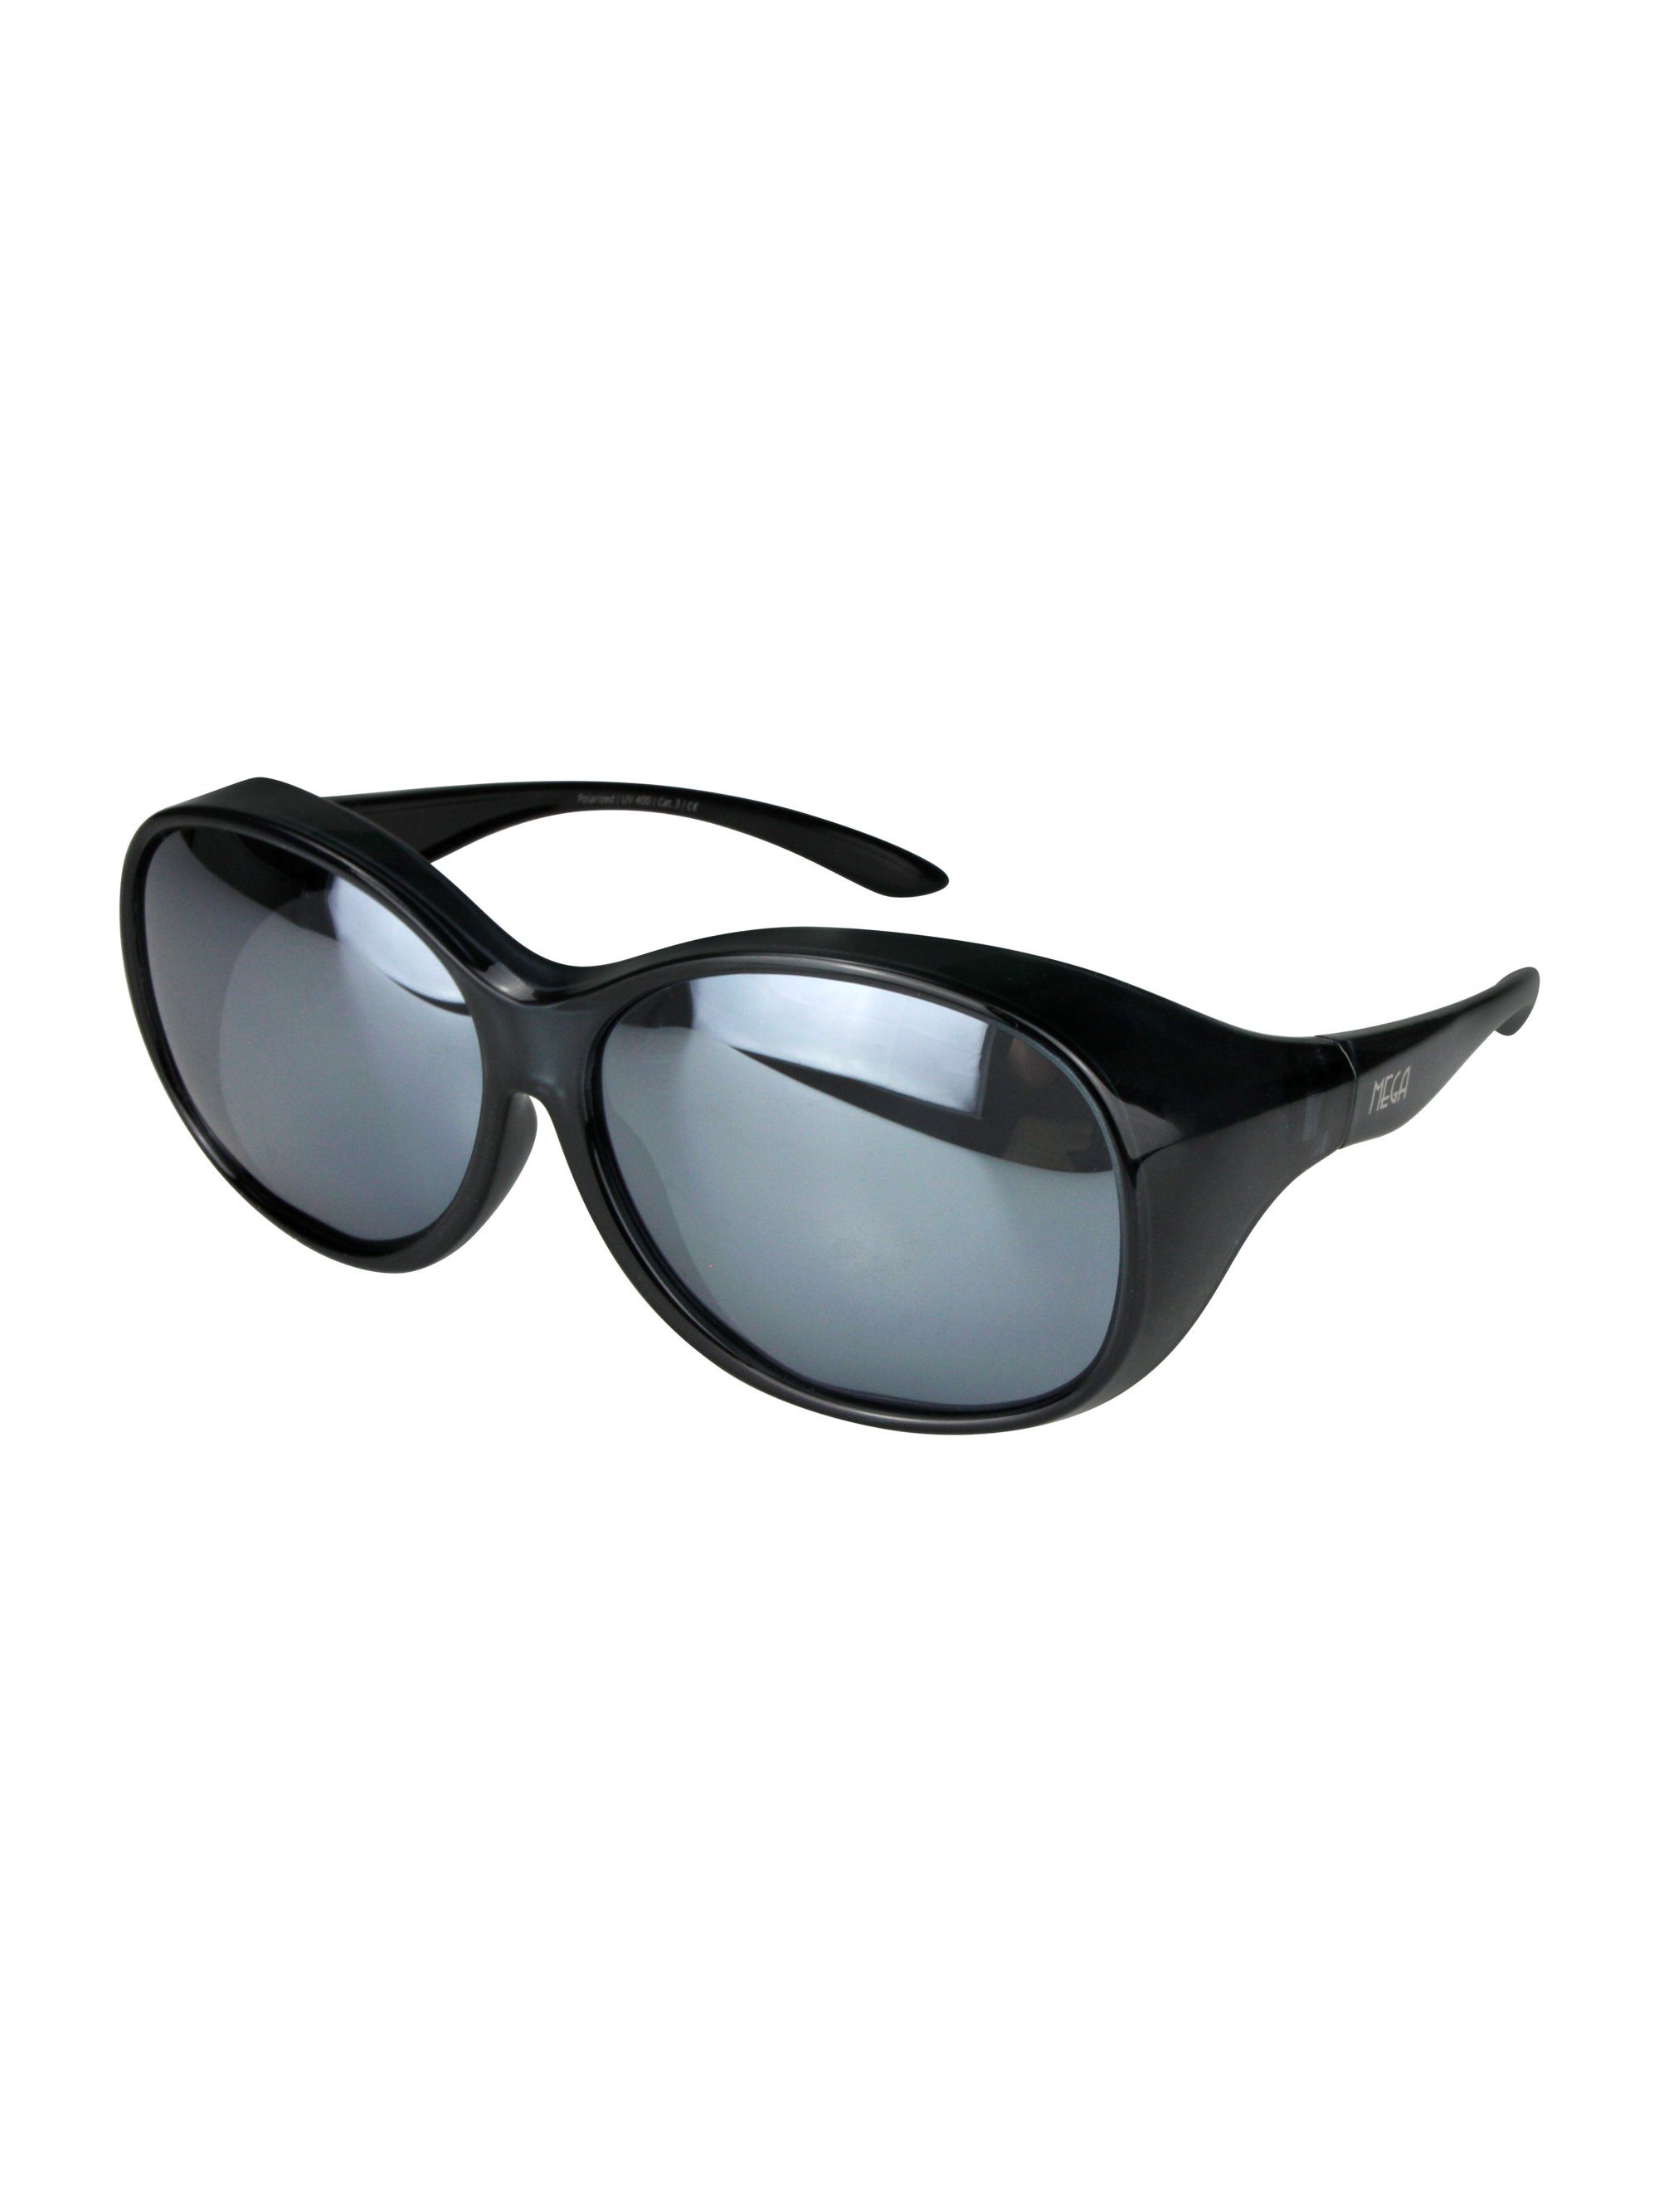 ActiveSol SUNGLASSES Vintage verspiegelt und Sonnenbrille Schiebebox MEGA Überziehsonnenbrille Stil Schwarz Damen (inklusive Brillenputztuch)